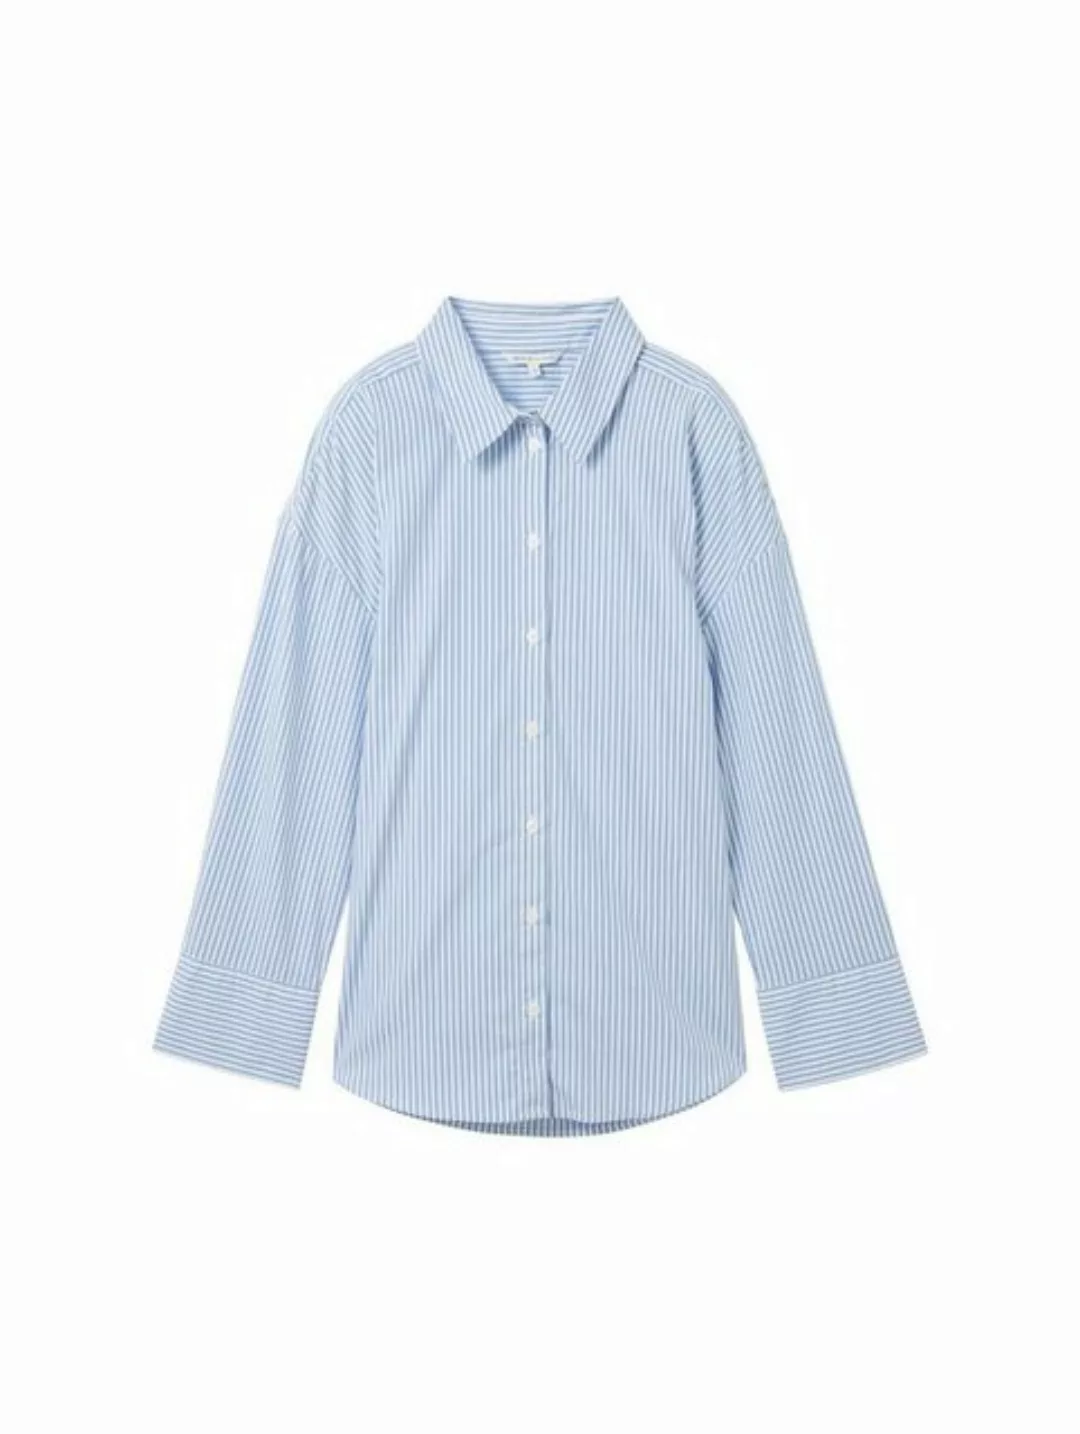 TOM TAILOR Denim Blusenshirt striped poplin shirt, blue white strripe günstig online kaufen